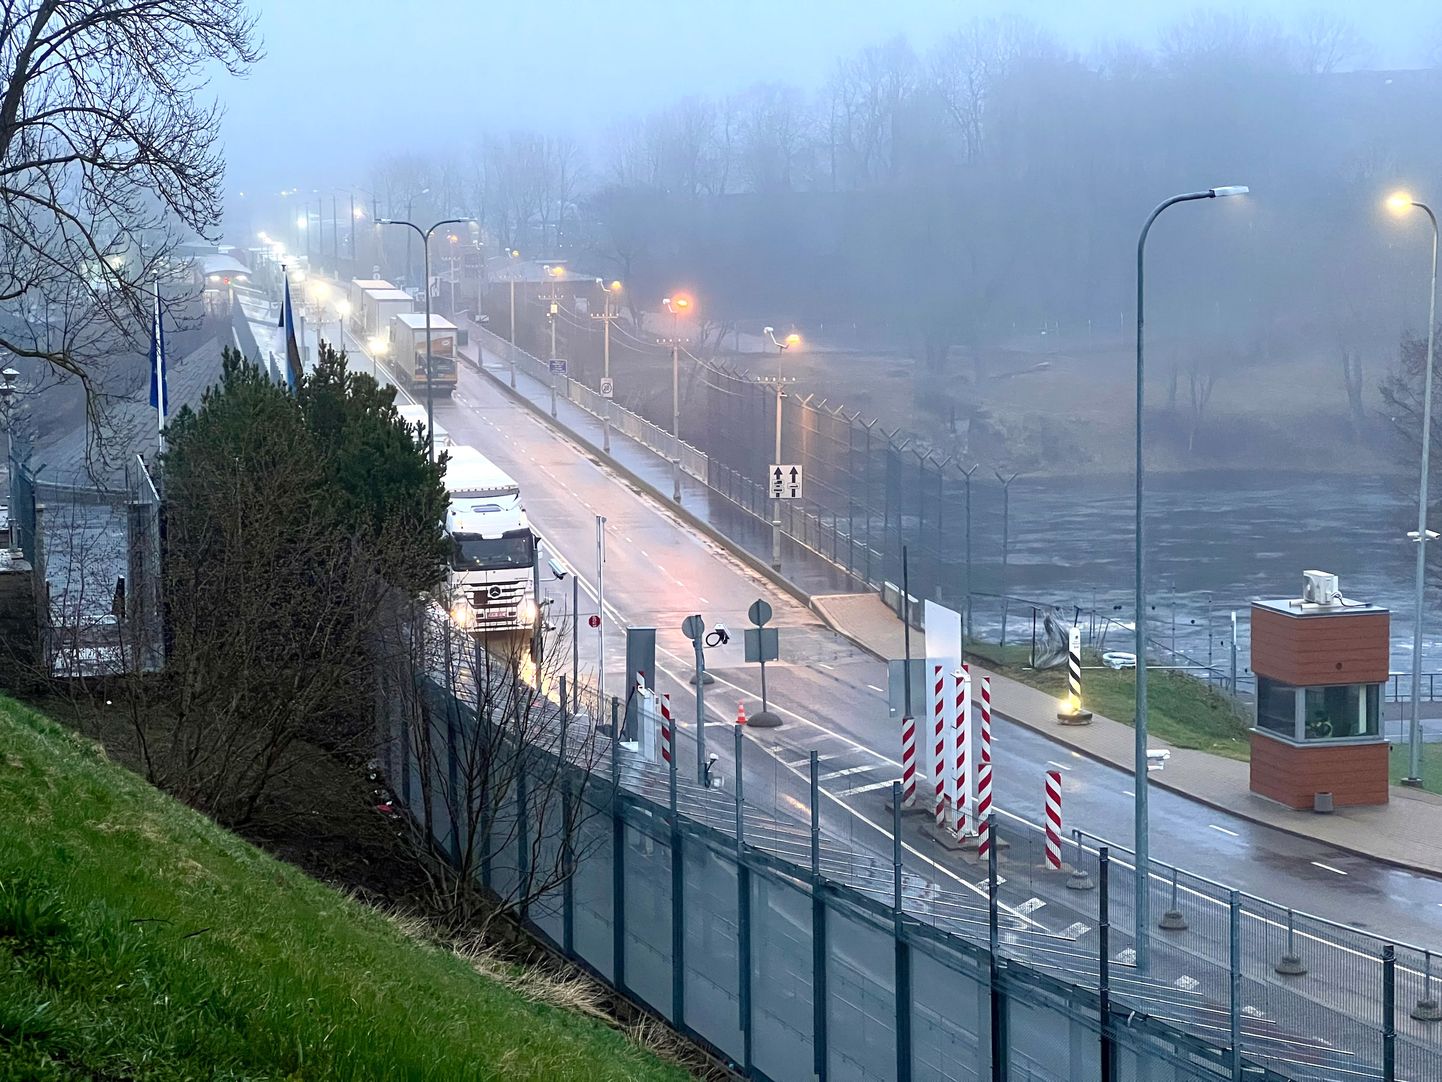 Прибывающих в Эстонию по мосту через реку Нарву украинцев могут не пустить в страну, если в ходе беседы у пограничников возникнет подозрение насчет причин приезда.